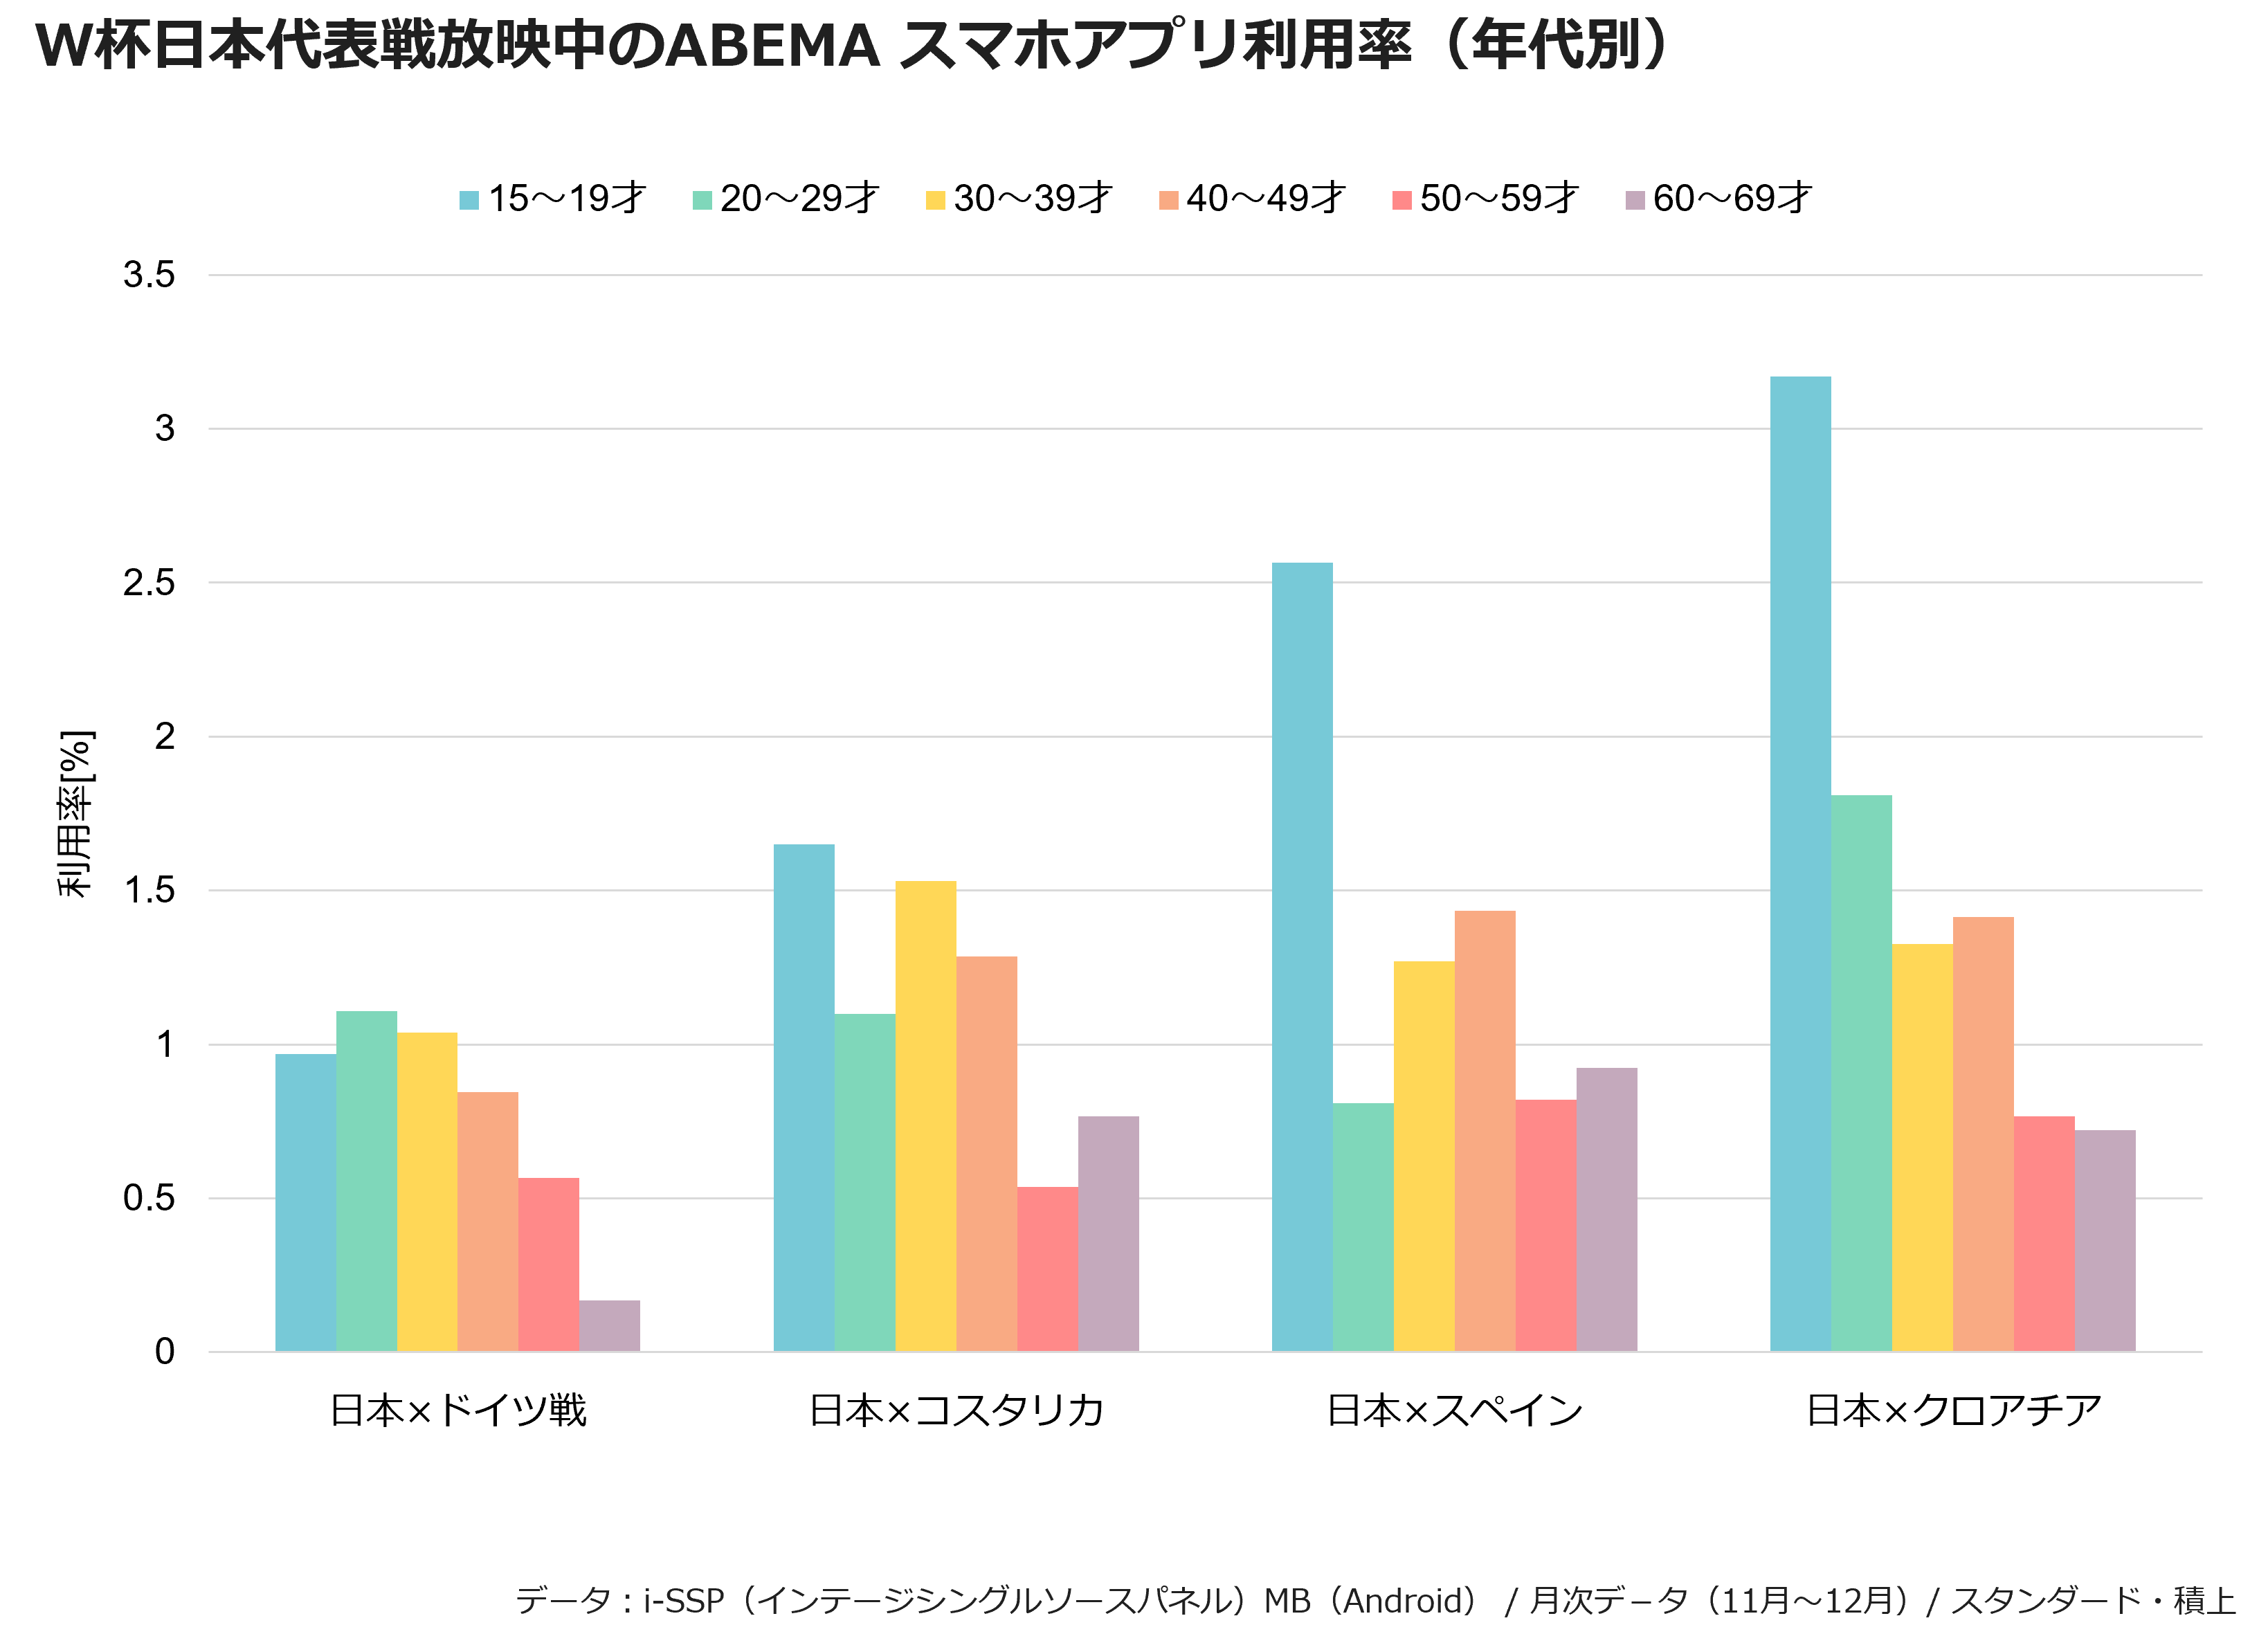 W杯日本代表戦放送中のABEMA スマホアプリ利用率（年代別）